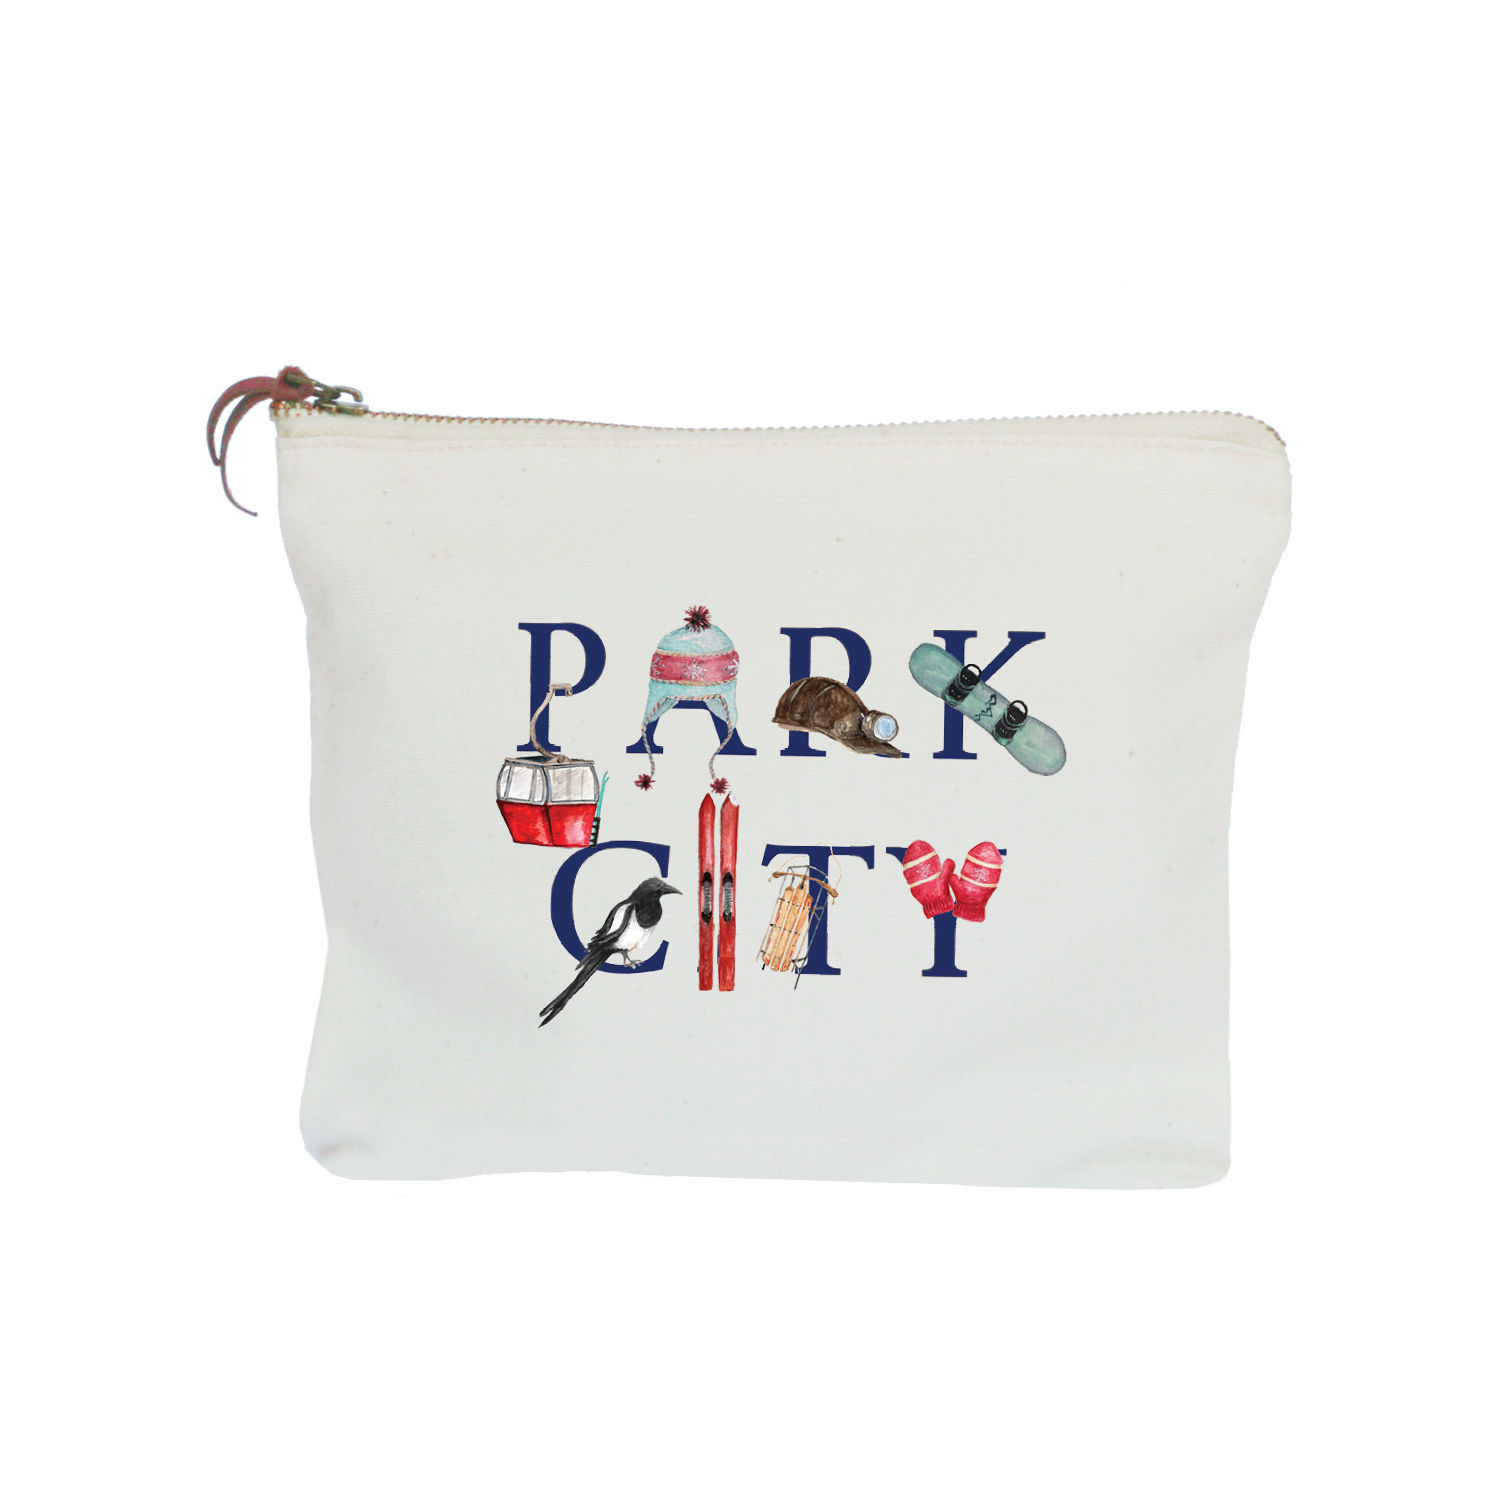 Park City zipper pouch